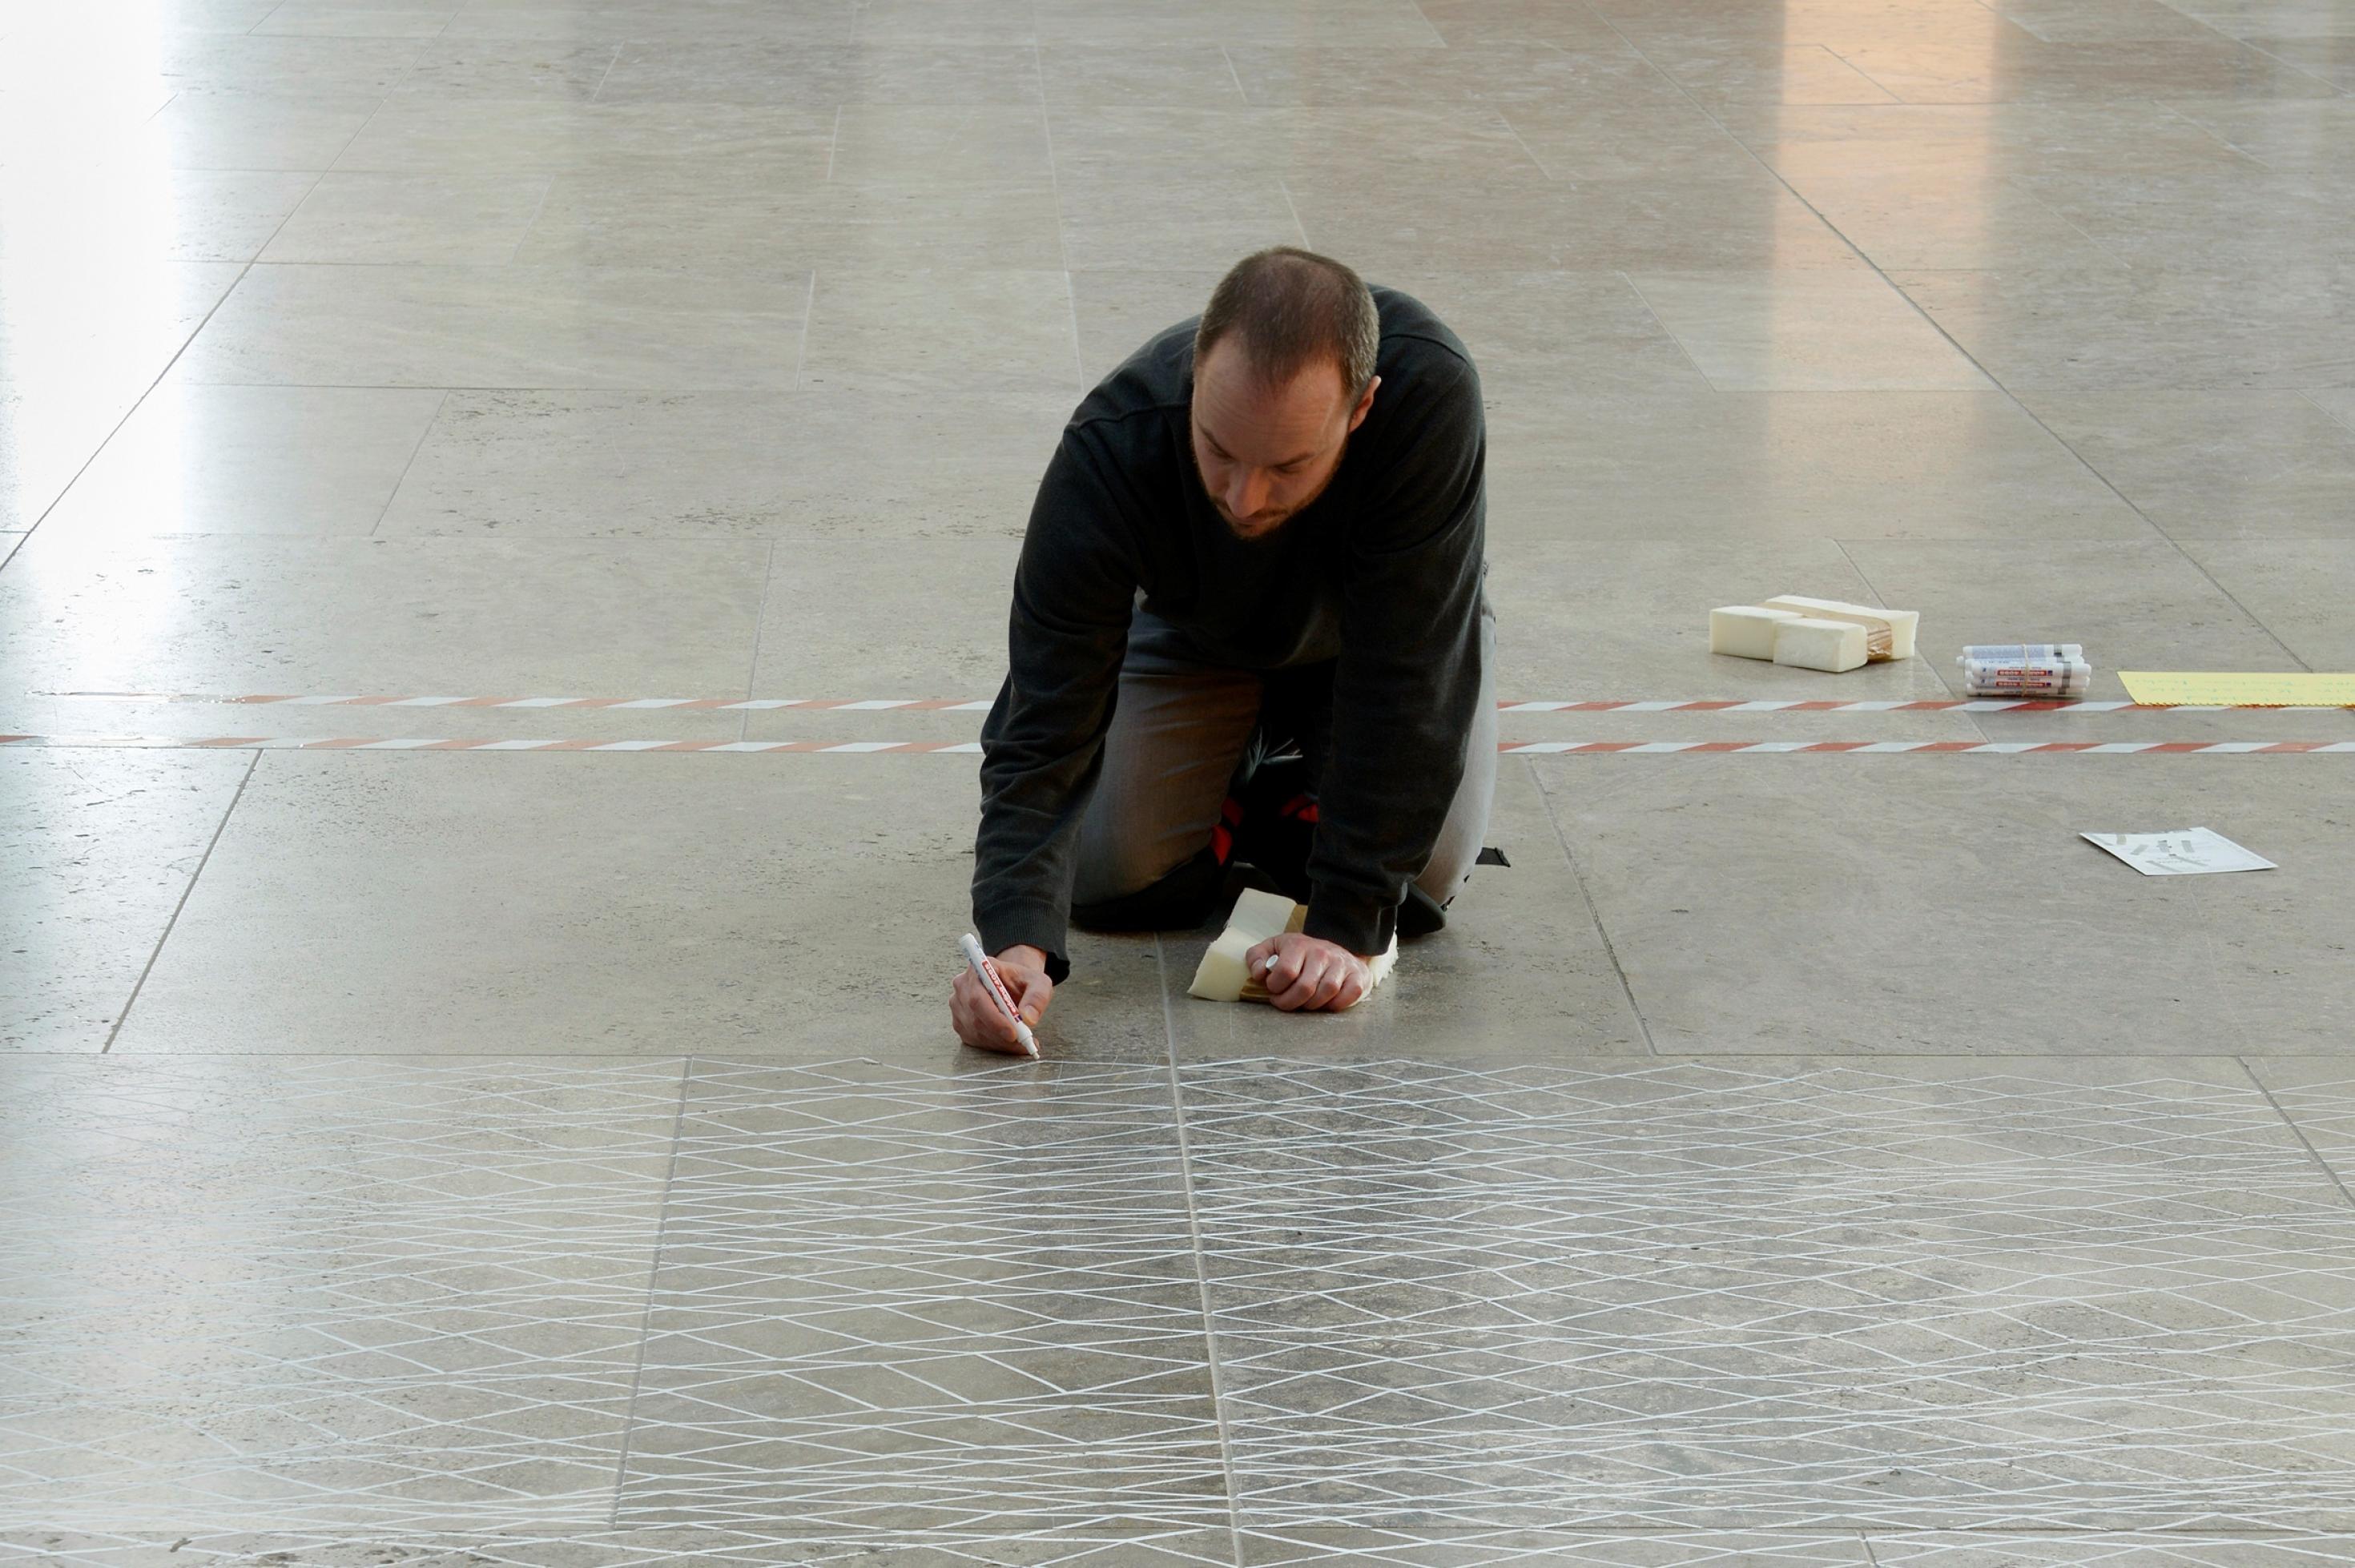 Ein Mann kniet auf dem grauen Boden und malt mit einem weißen Stift ein Netzmuster darauf.